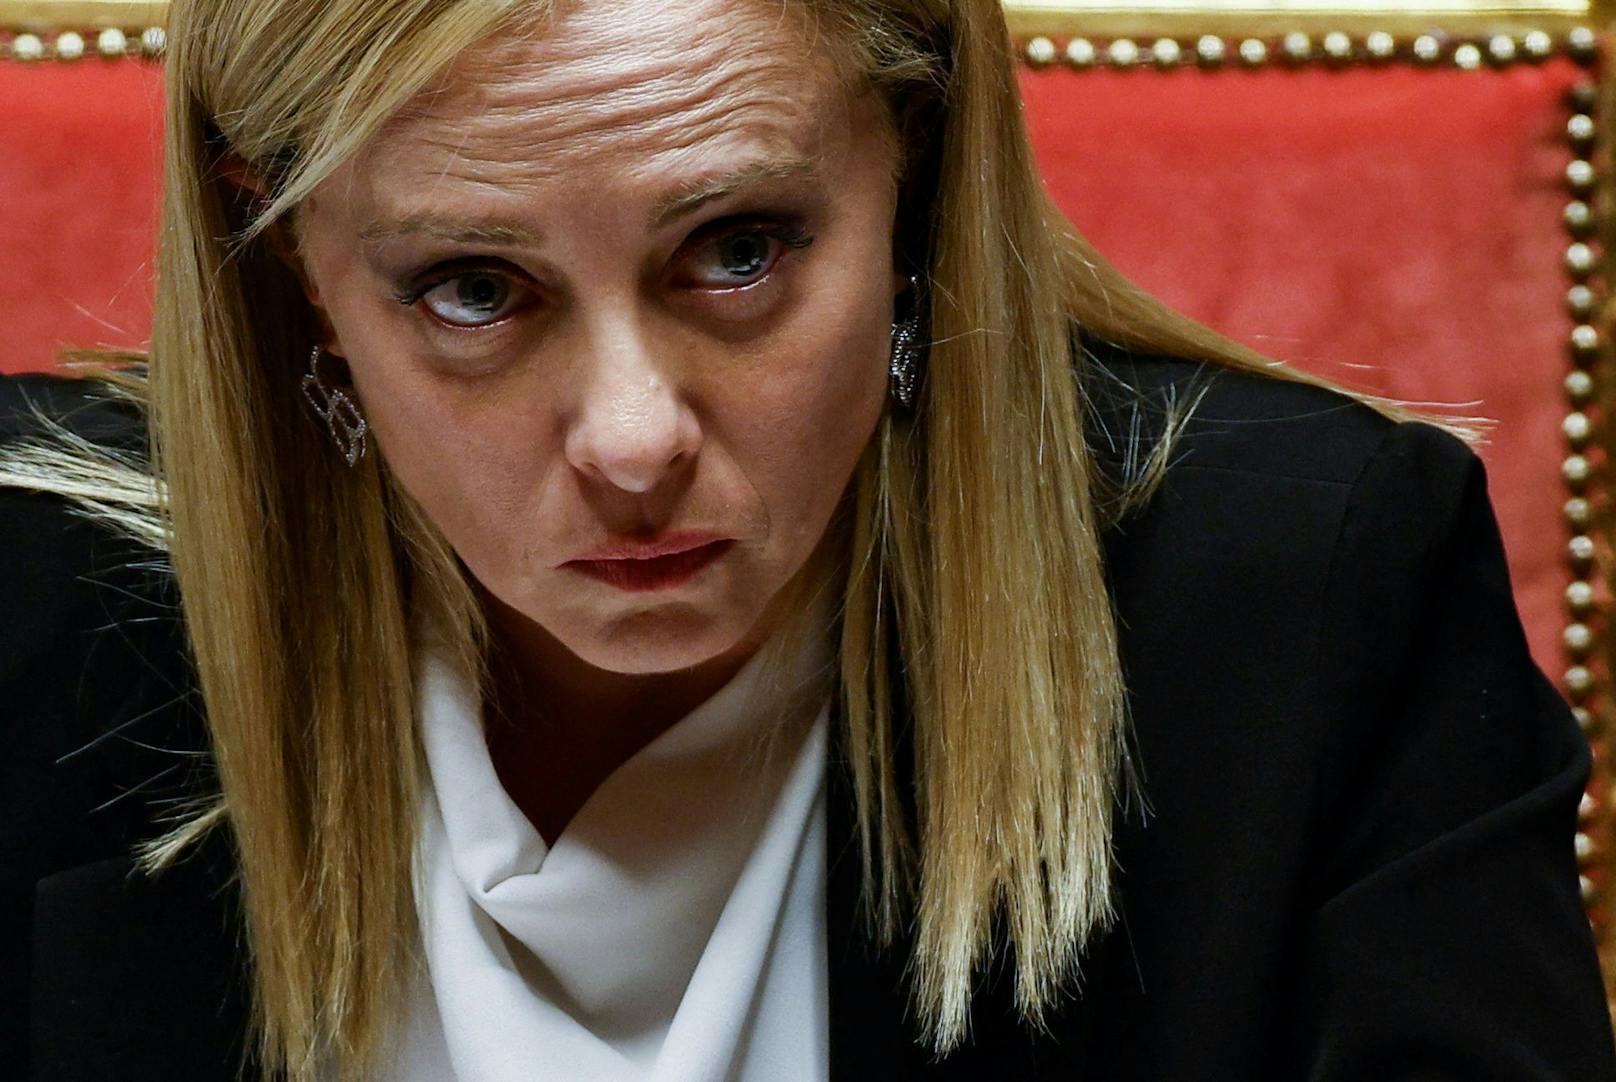 Sie macht kurzen Prozess: Weil er sie als "Bastard" bezeichnete, zieht Giorgia Meloni vor Gericht.